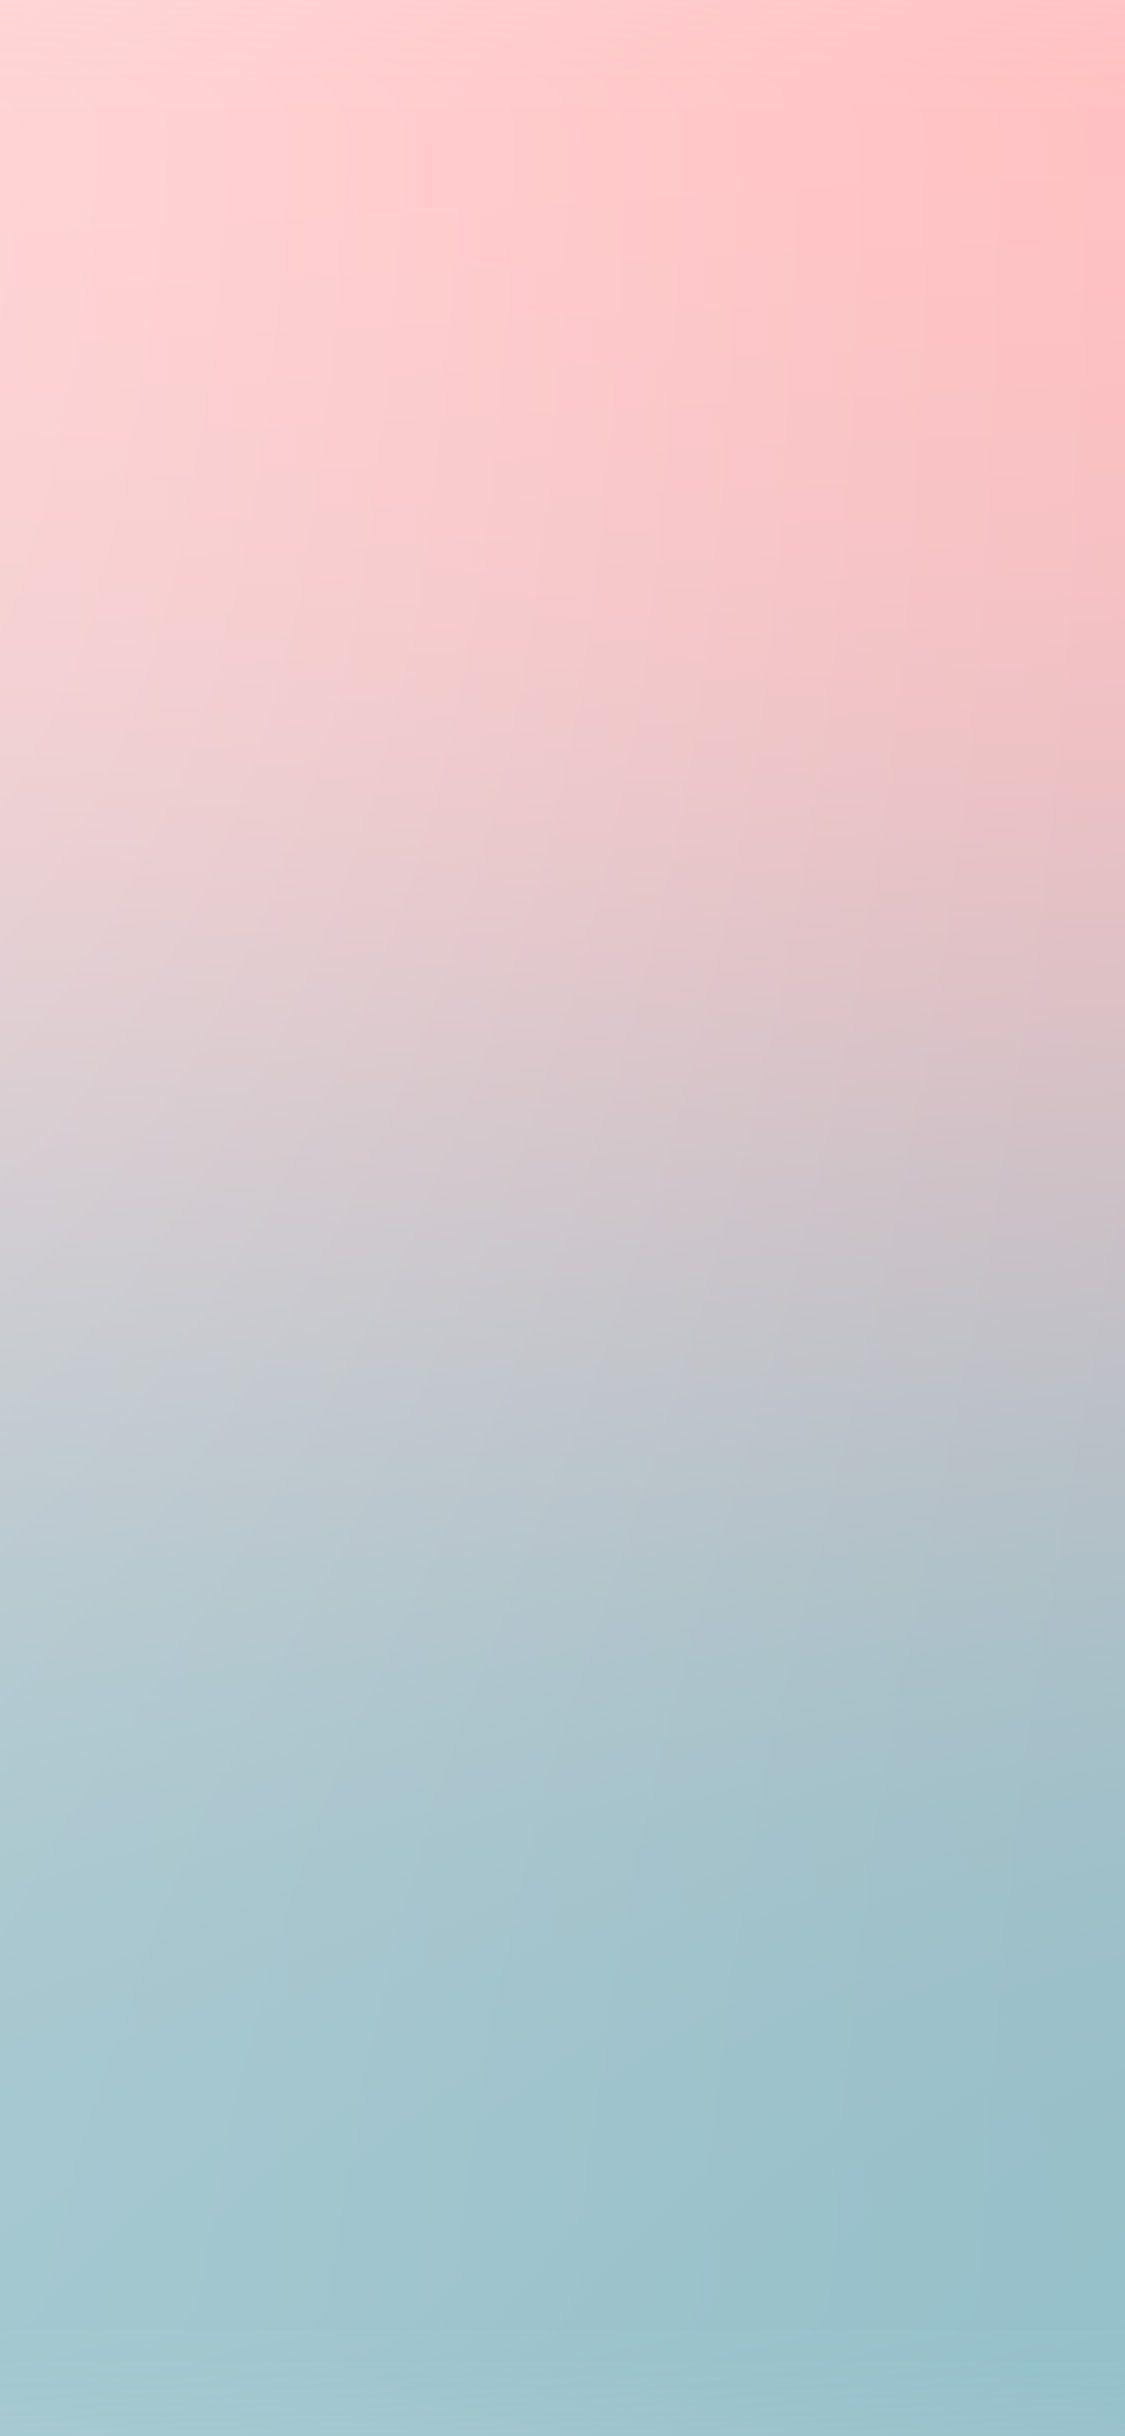 Bạn đang tìm kiếm hình nền iPhone đẹp và đa dạng với sắc màu tươi sáng? Hình nền iPhone màu hồng và xanh dương đầy sắc màu sẽ khiến cho trải nghiệm của bạn trên màn hình điện thoại trở nên thú vị hơn bao giờ hết. Xem ngay để tận hưởng vẻ đẹp hoàn hảo từ hình nền này.